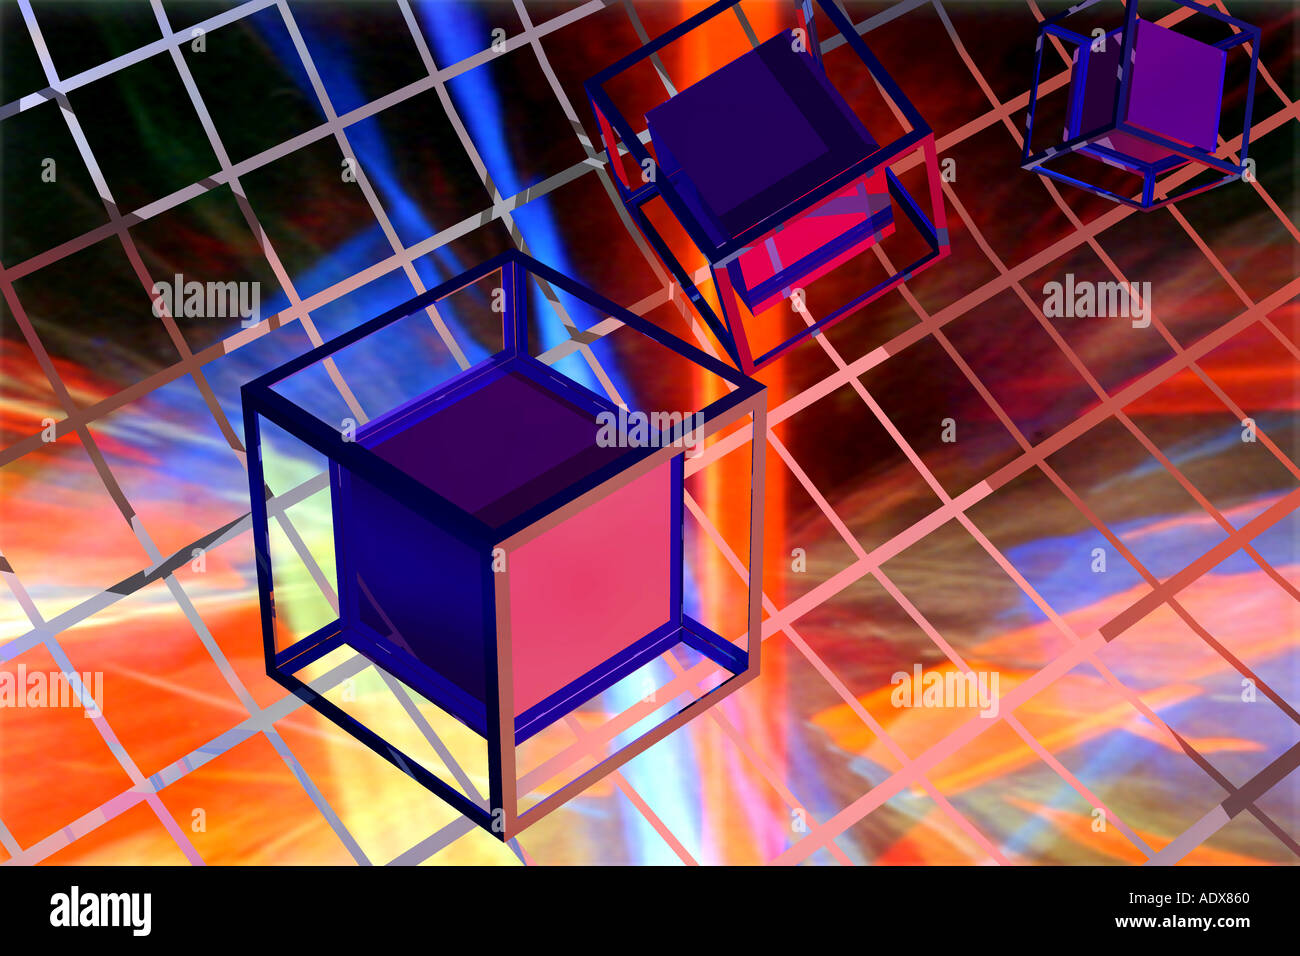 Illustrations de cubes cube image virtuelle image rendue traversant en diagonale lors de la communication de l'information données réseau Banque D'Images